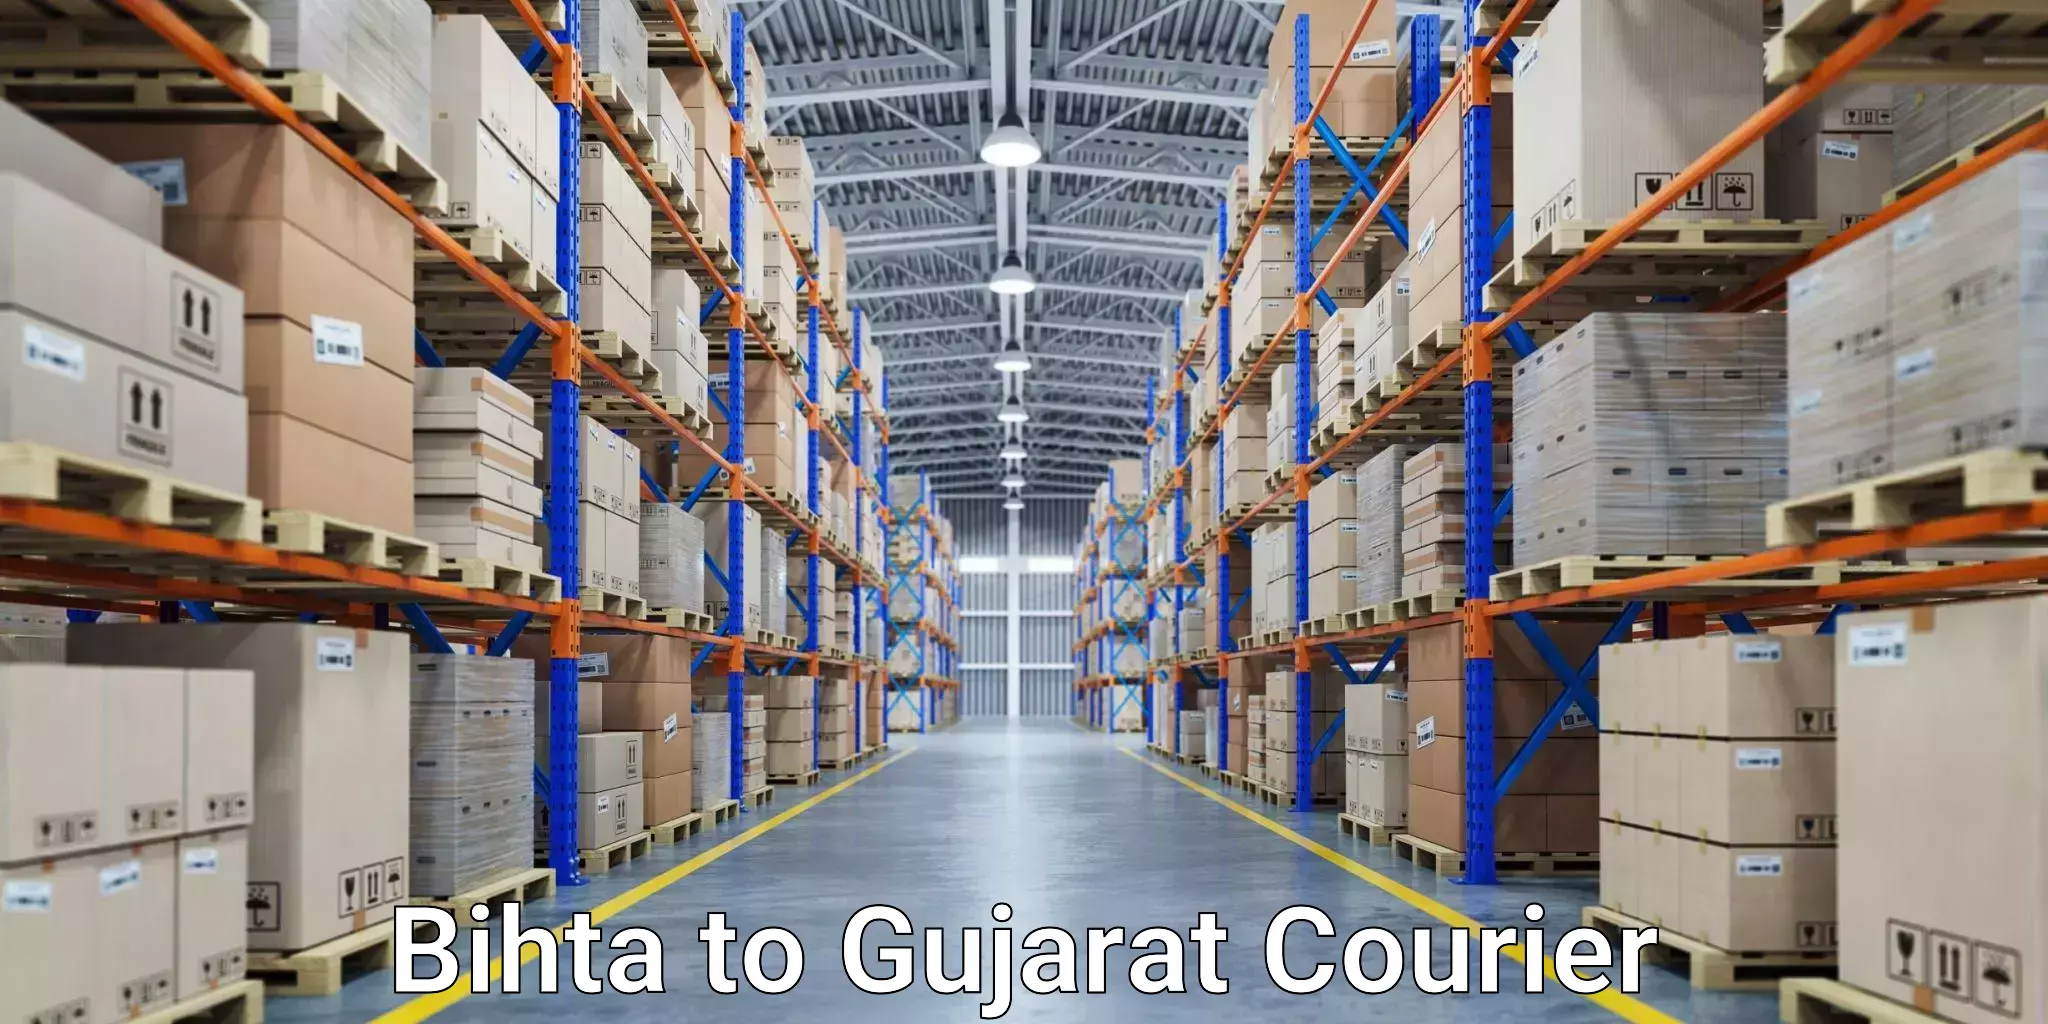 Premium courier solutions Bihta to Rapar